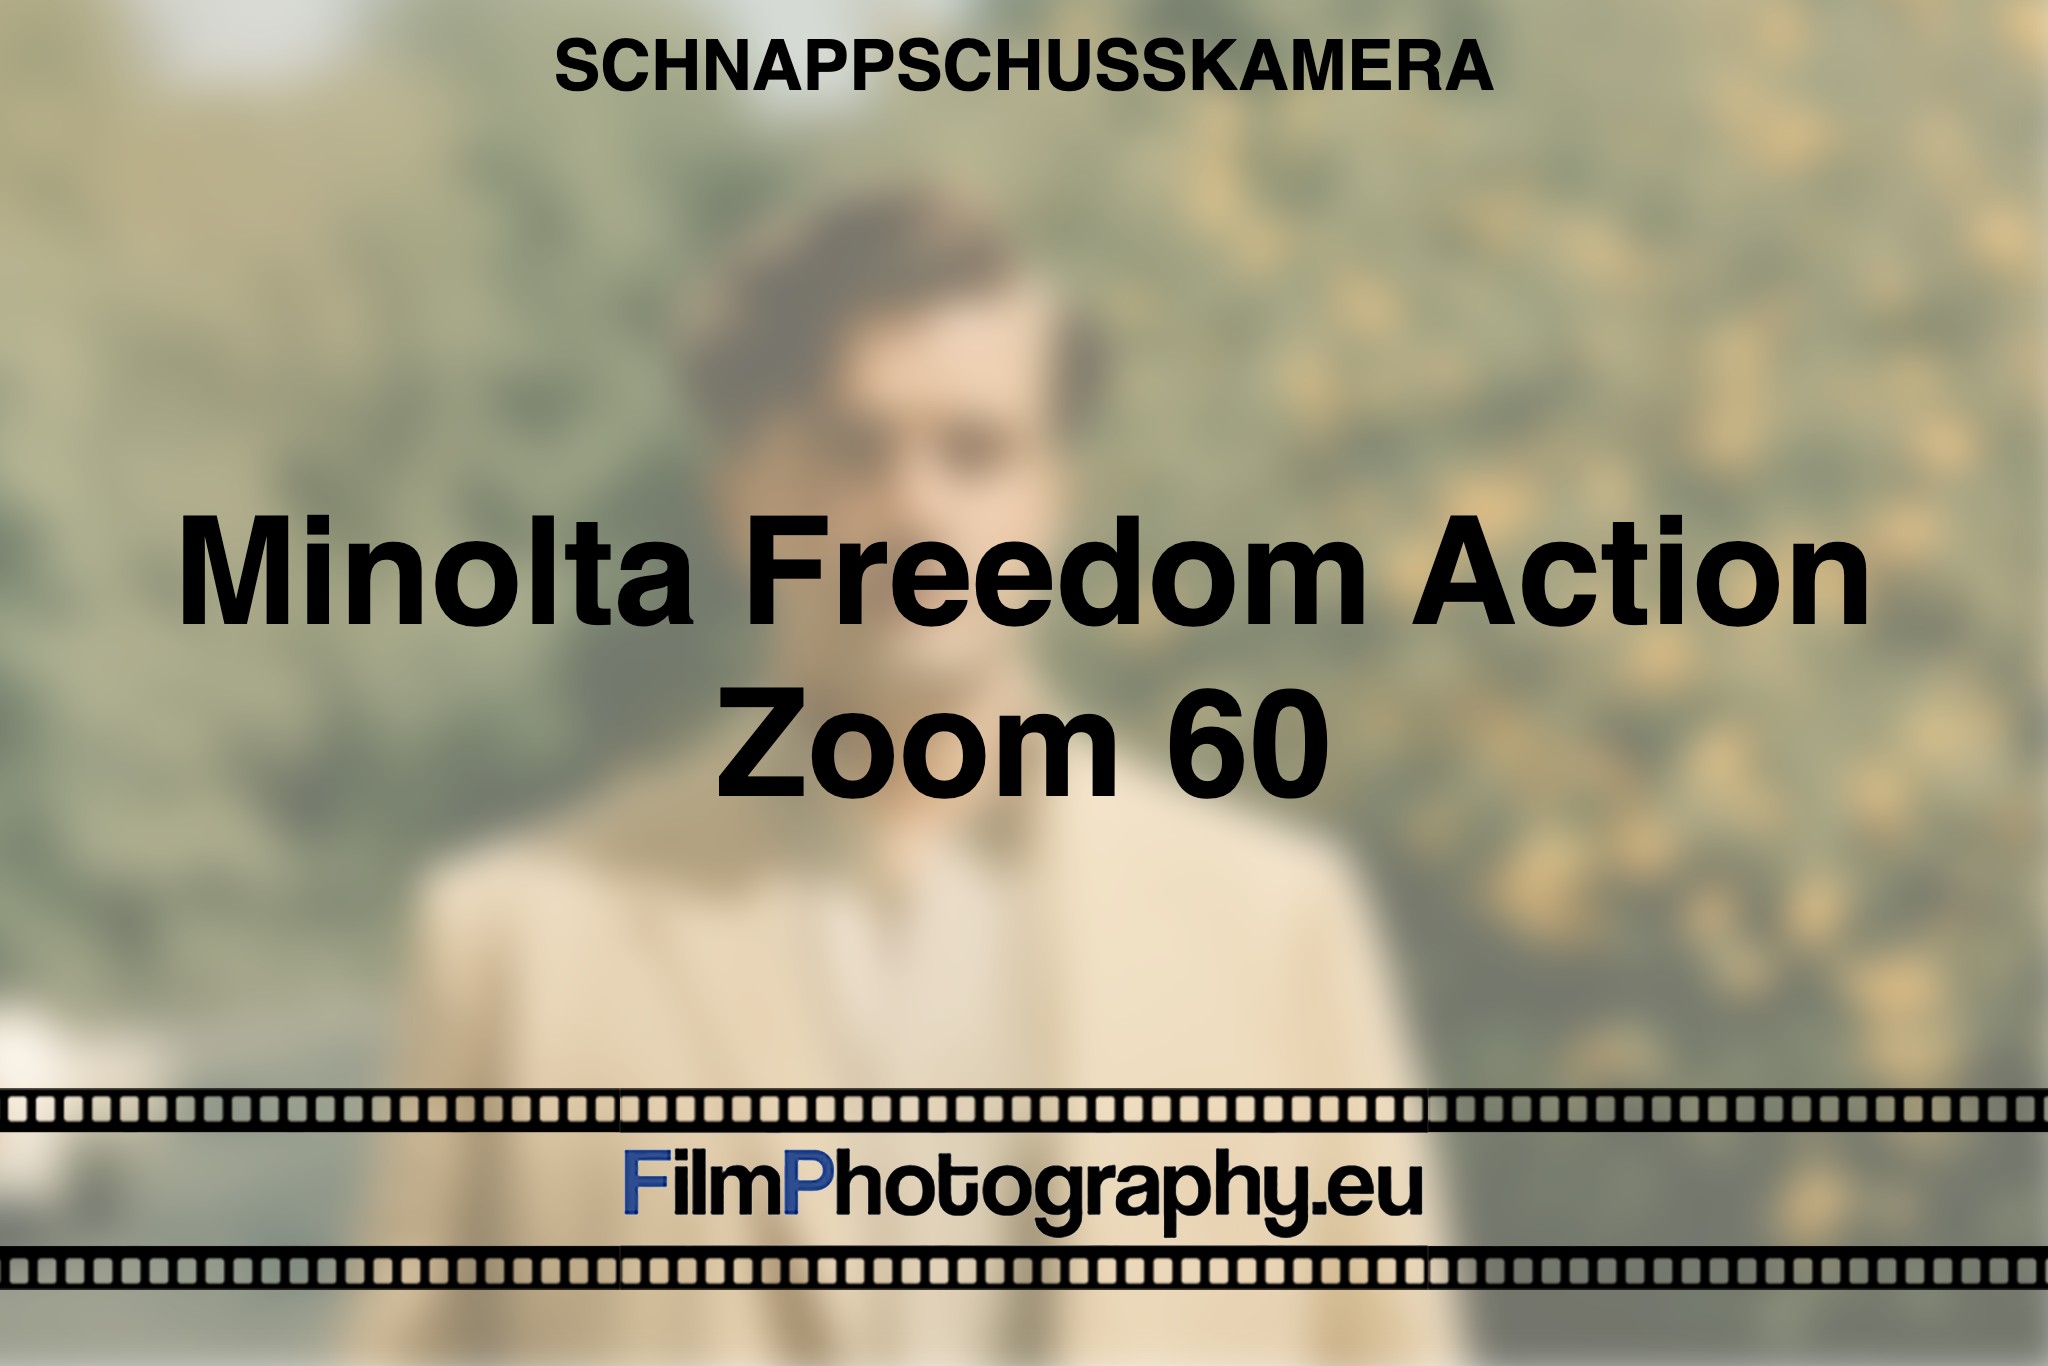 minolta-freedom-action-zoom-60-schnappschusskamera-bnv